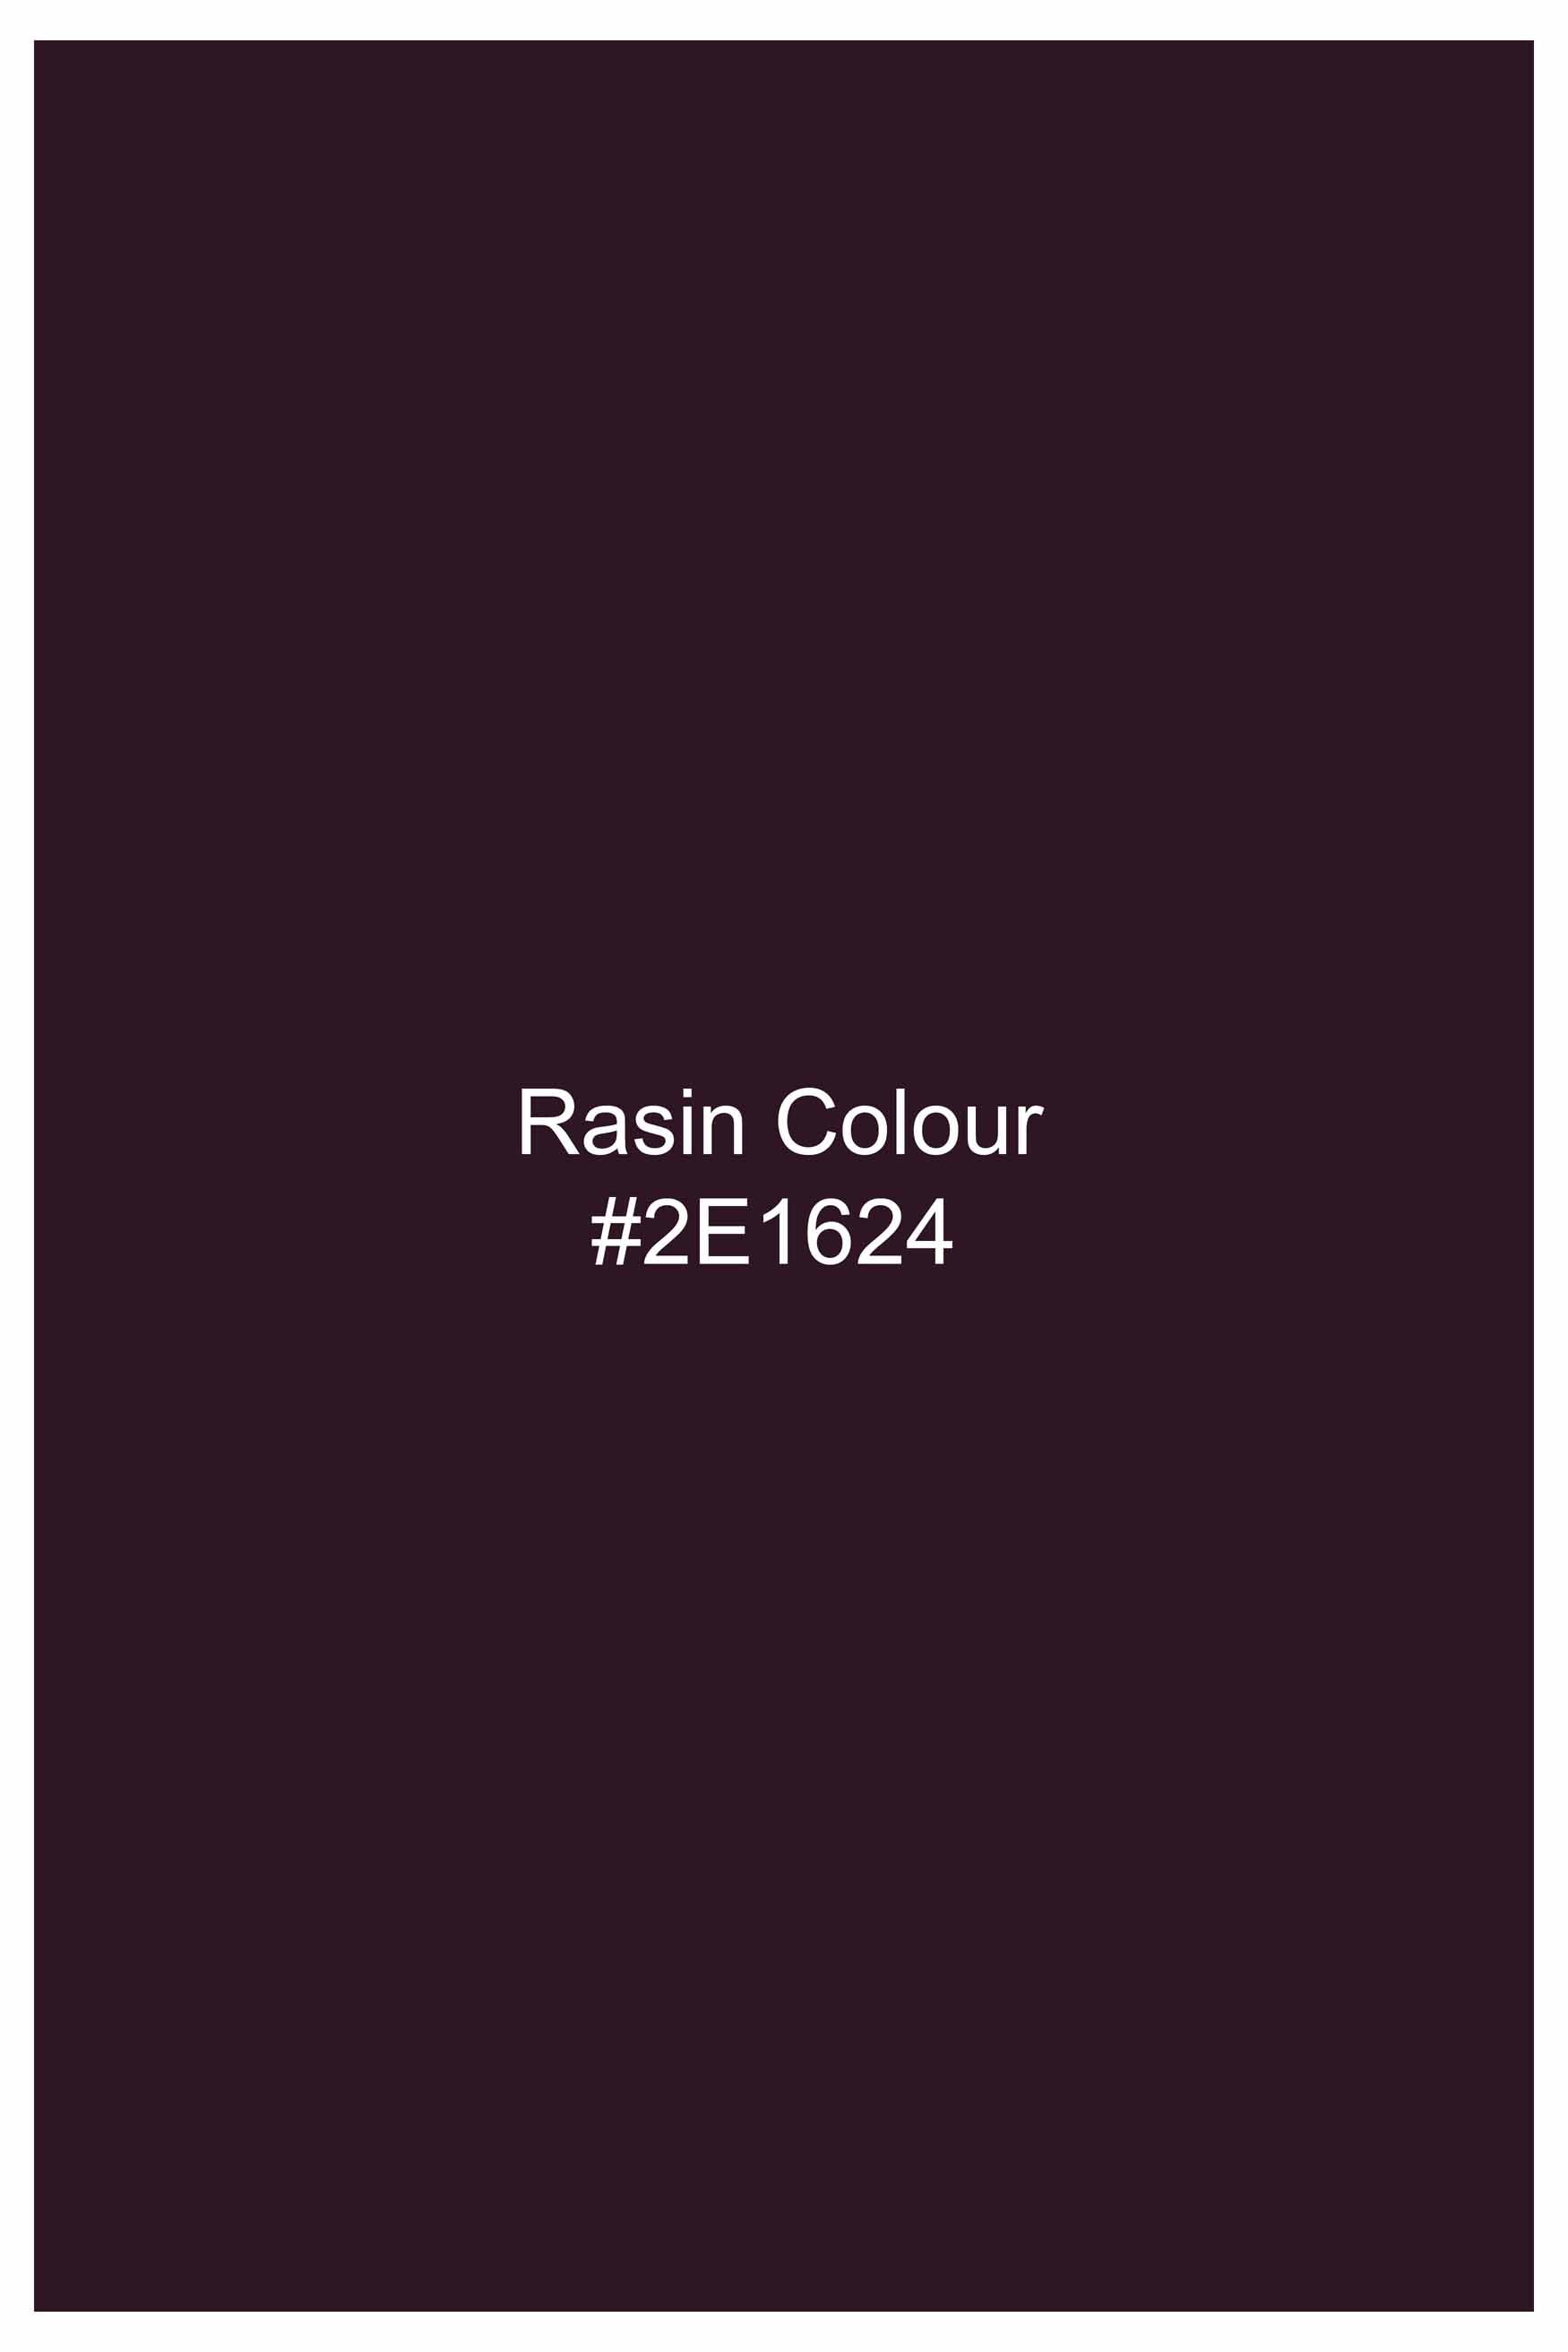 Rasin Wine Subtle Sheen Super  Soft Premium Cotton Tuxedo Shirt